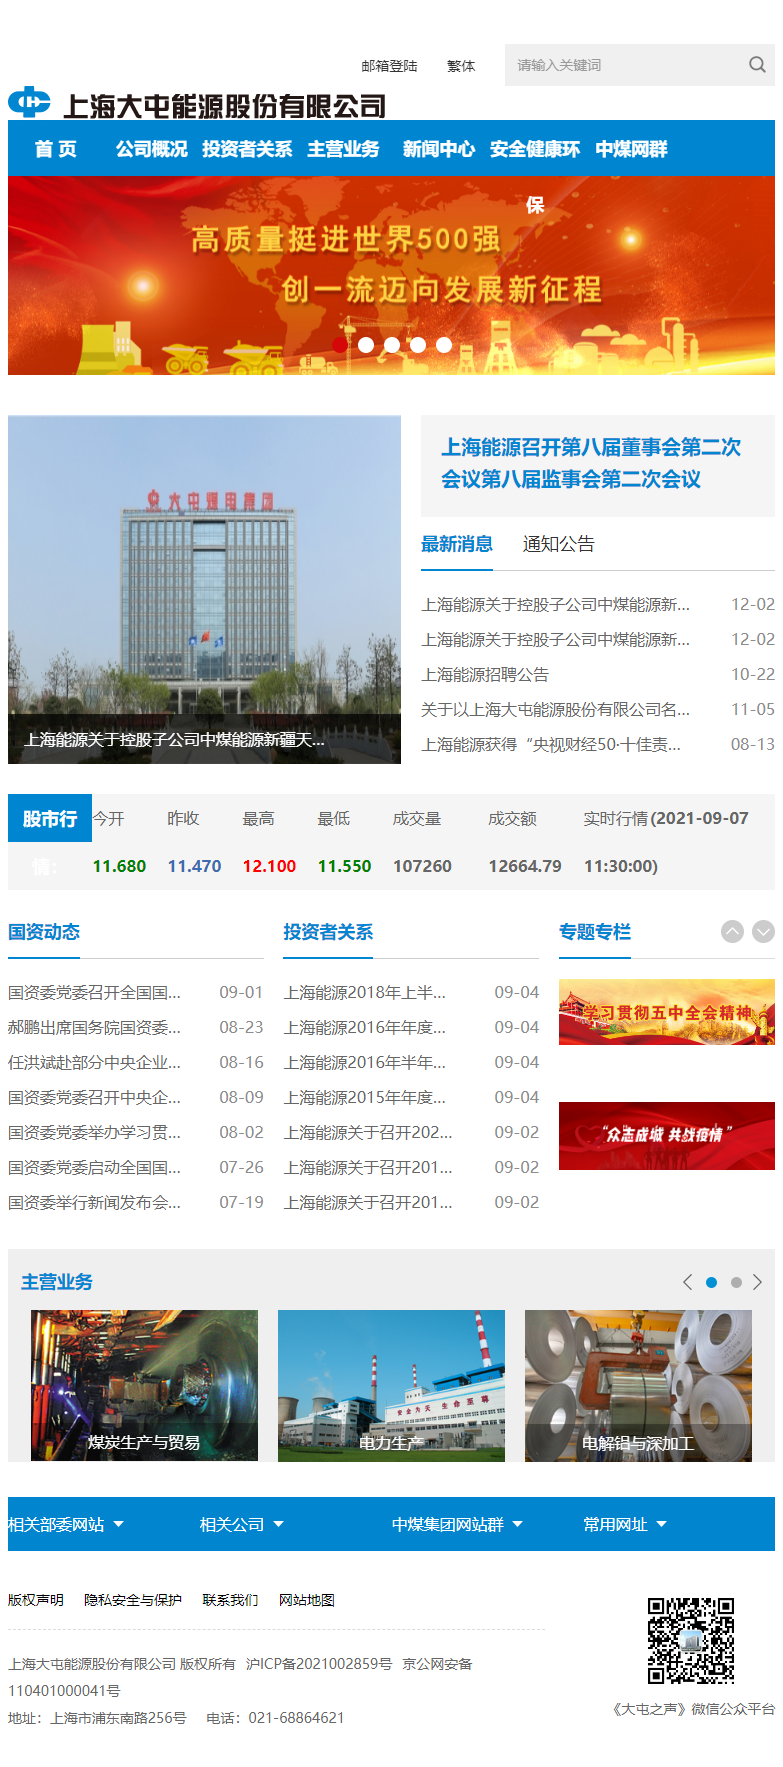 上海大屯能源股份有限公司网站案例